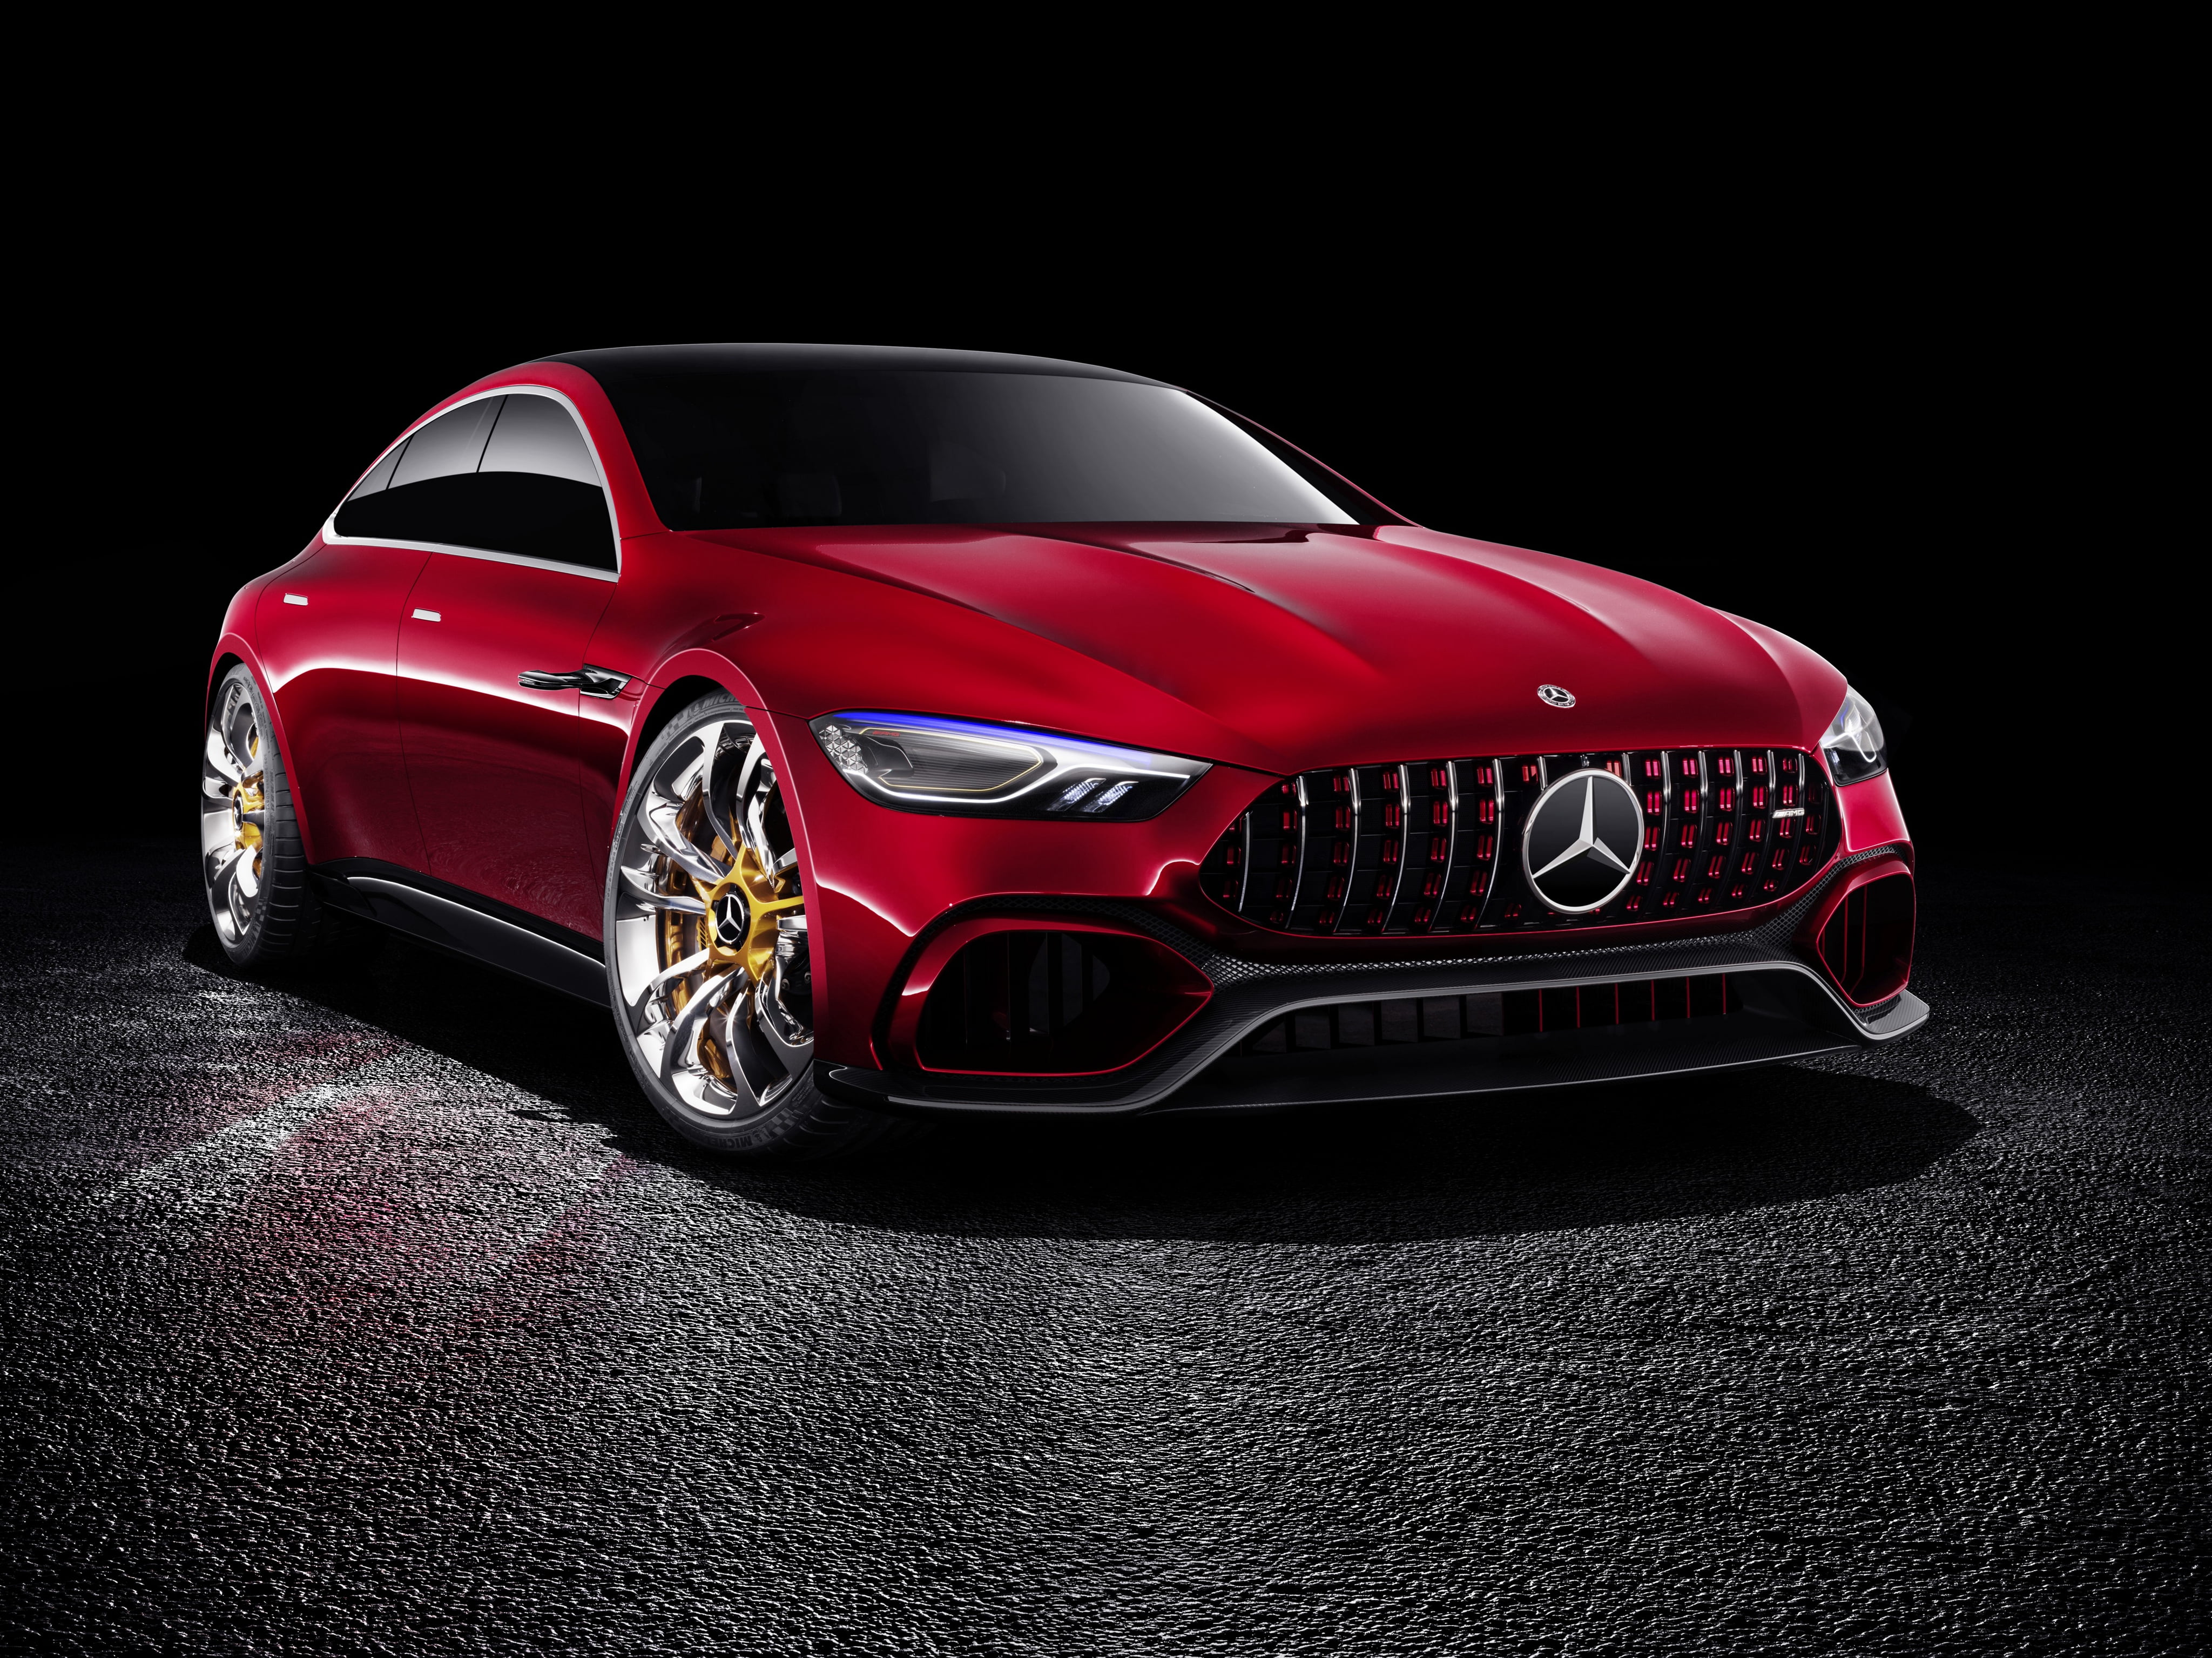 Cùng truy cập hình nền Mercedes-Benz coupe đỏ để thấy sự tuyệt vời của chiếc xe sang trọng này. Hình ảnh sắc nét, màu sắc rực rỡ sẽ đưa bạn vào không gian sang trọng và đẳng cấp. Đảm bảo sẽ đem lại trải nghiệm sống động cho màn hình của bạn.